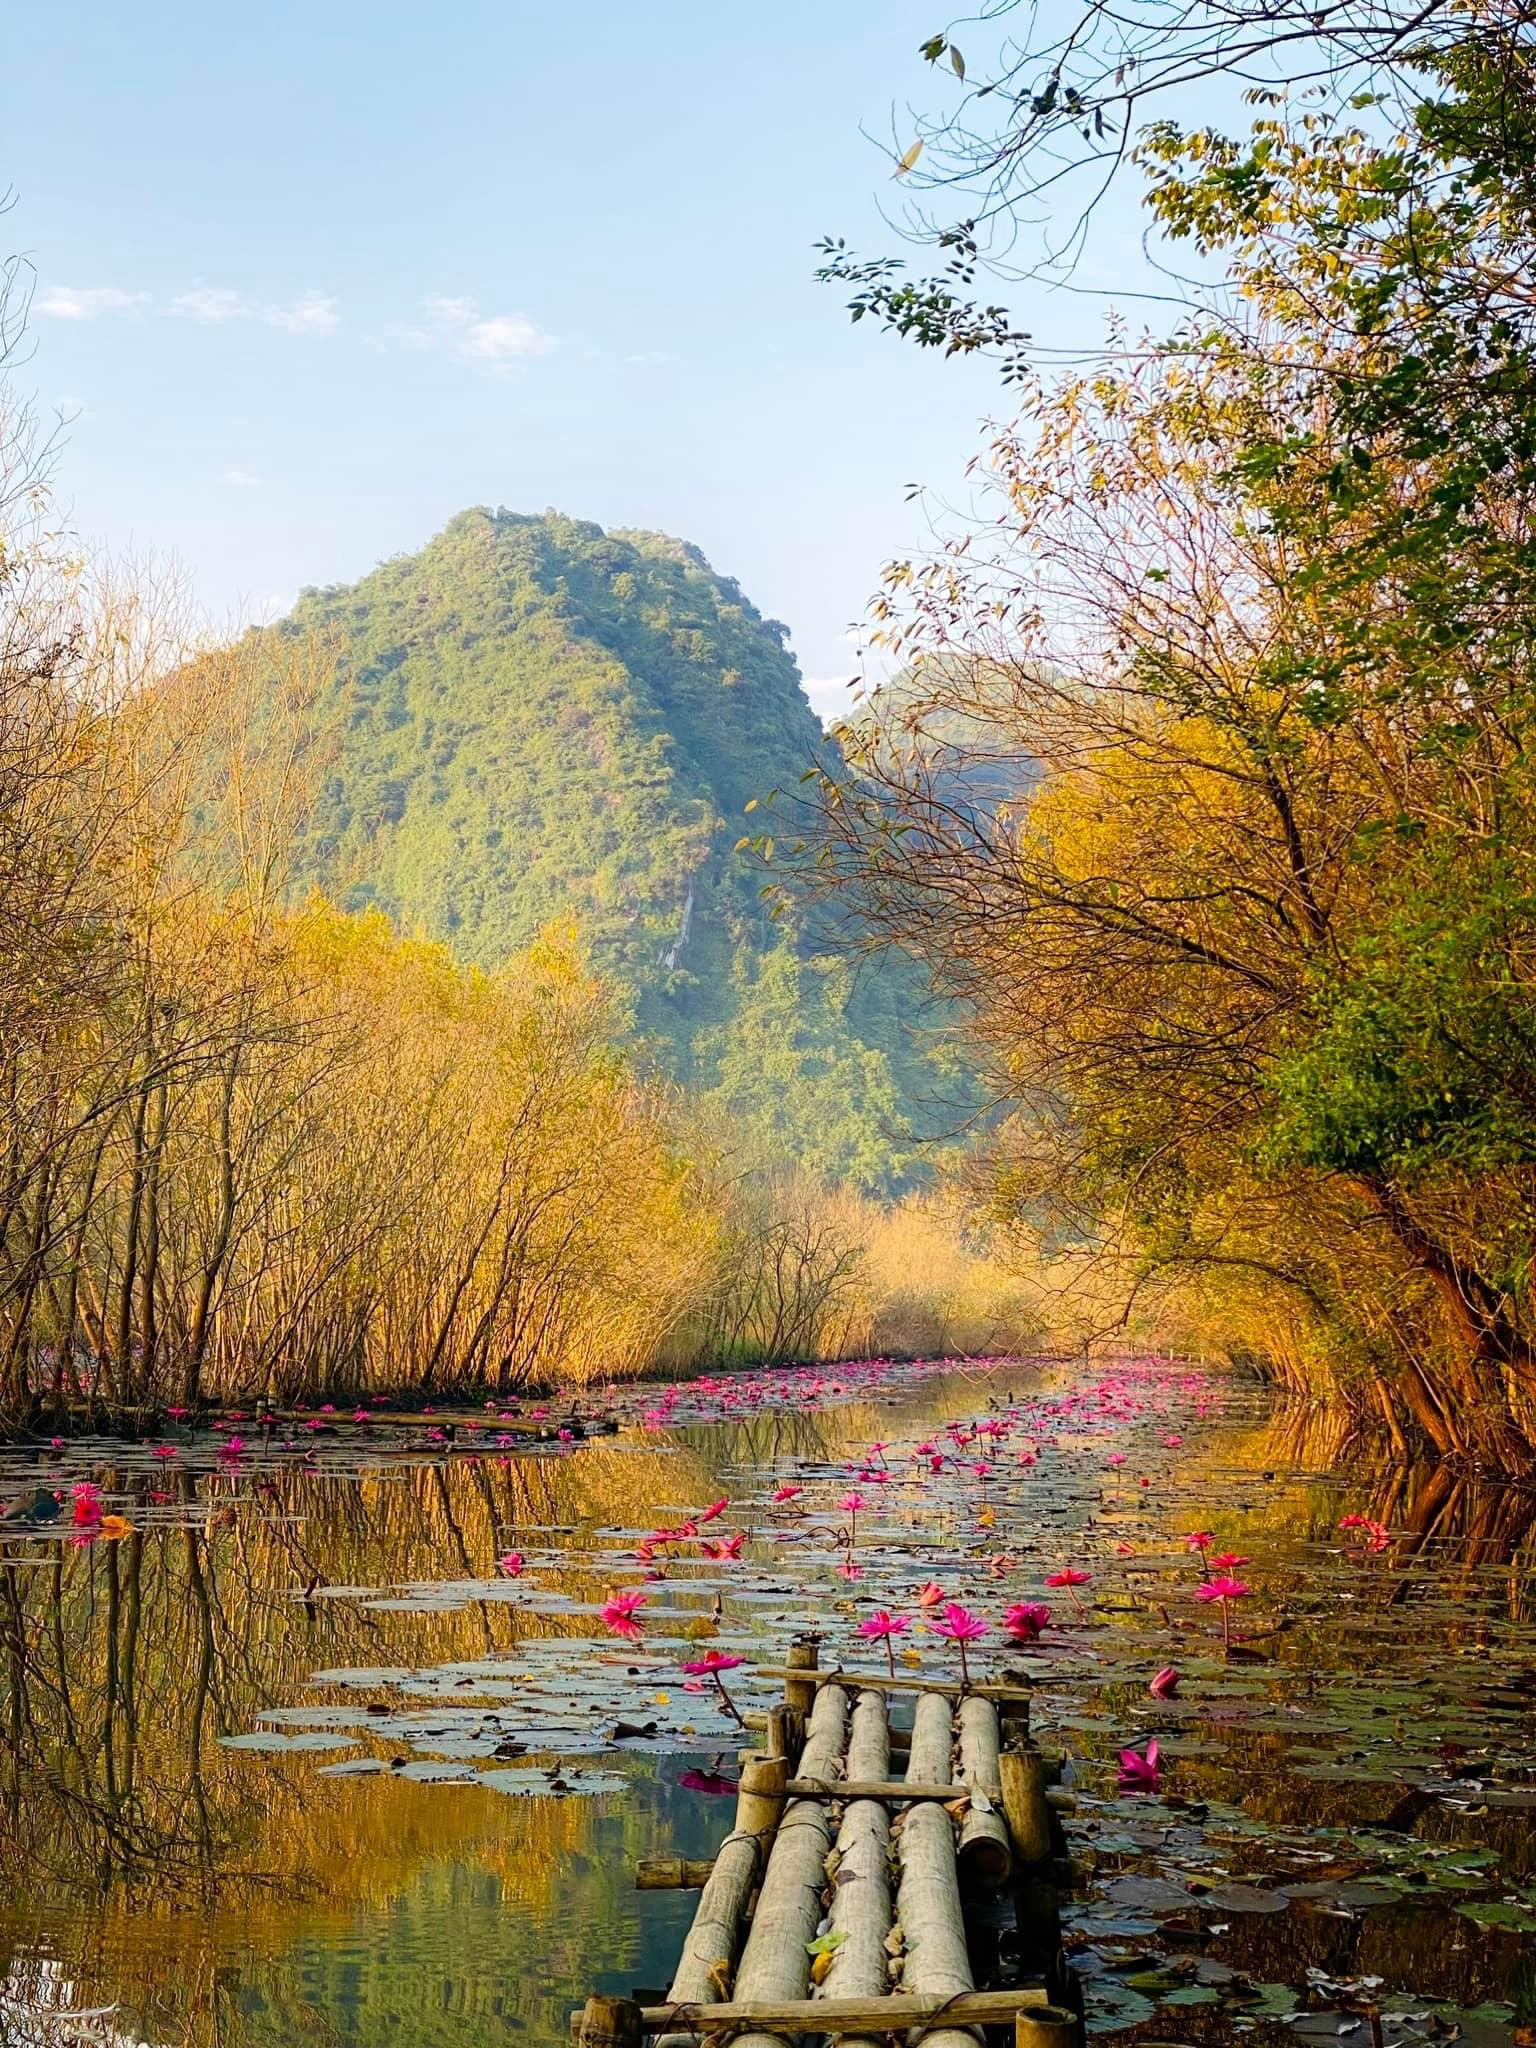 Tới chùa Hương ngắm thiếu nữ rạng ngời bên dòng suối 'nở hoa' - 1